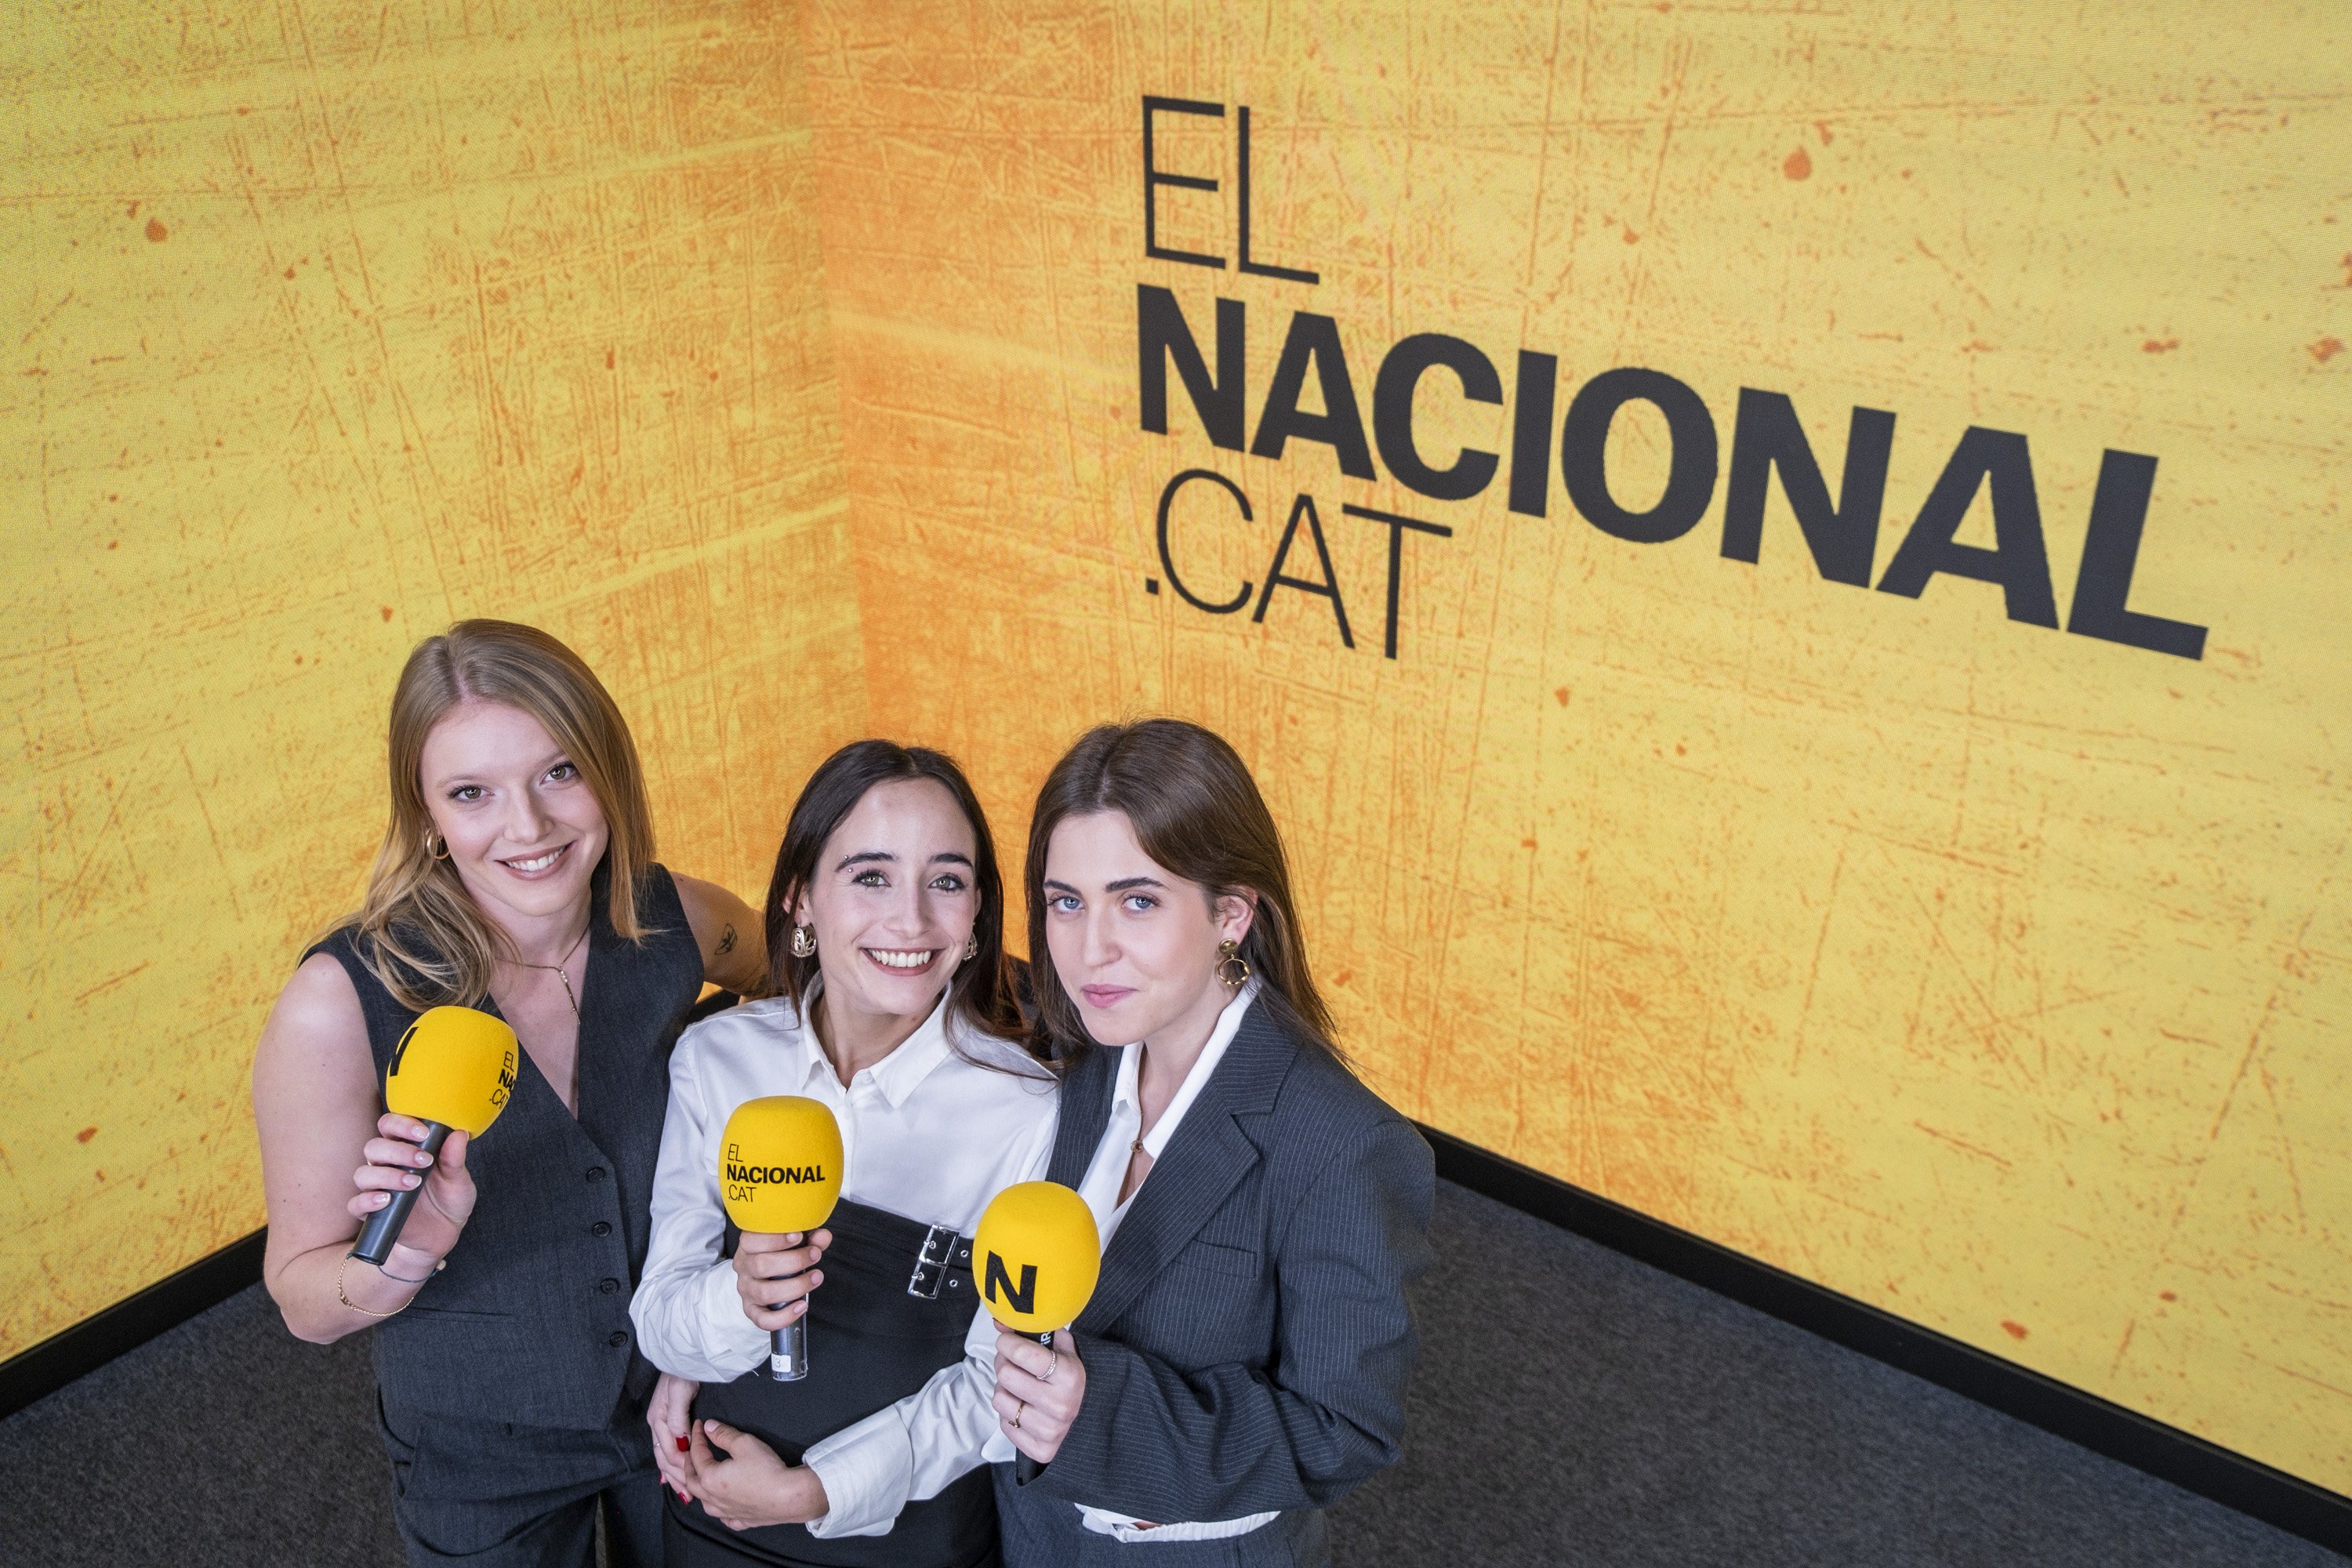 Núria, Ona y Joana ya están aquí: Can Putades fichan por ElNacional.cat